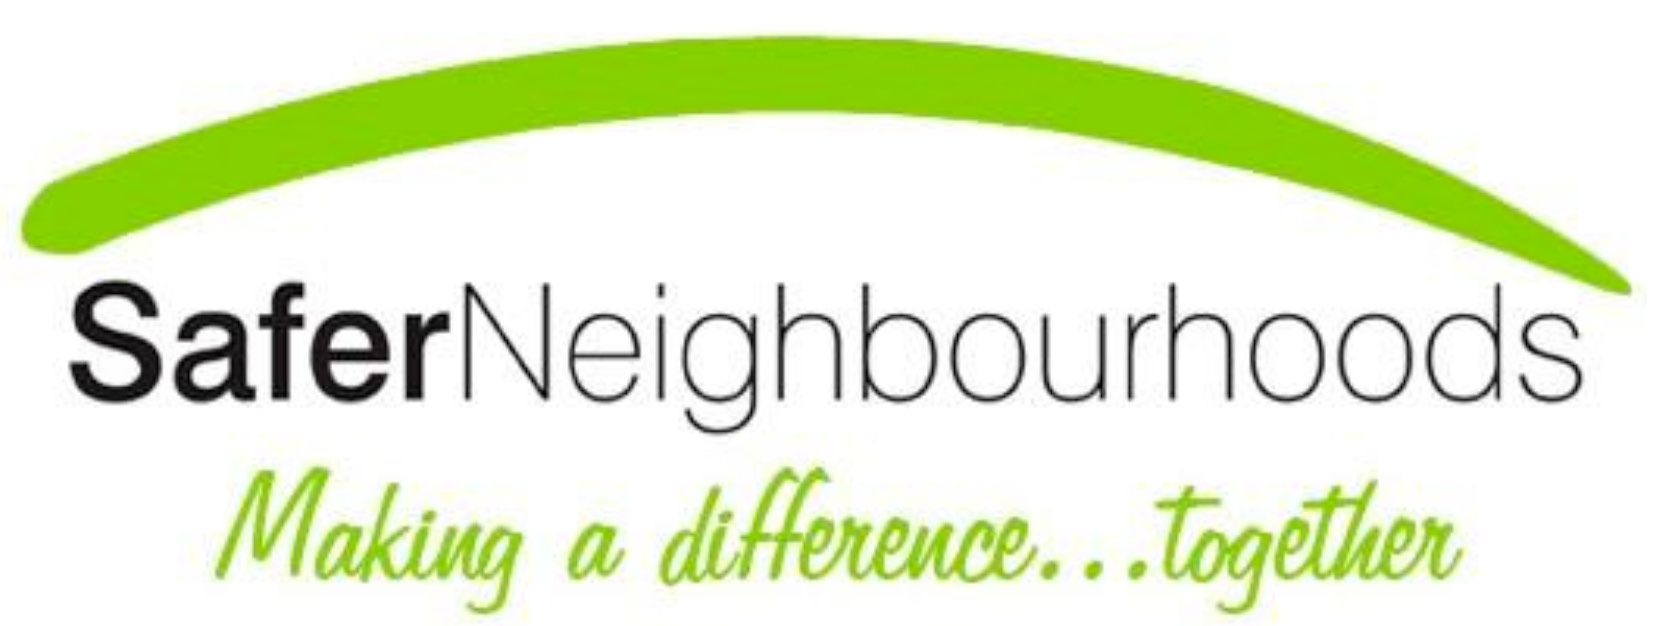 Safer neighbourhoods logo